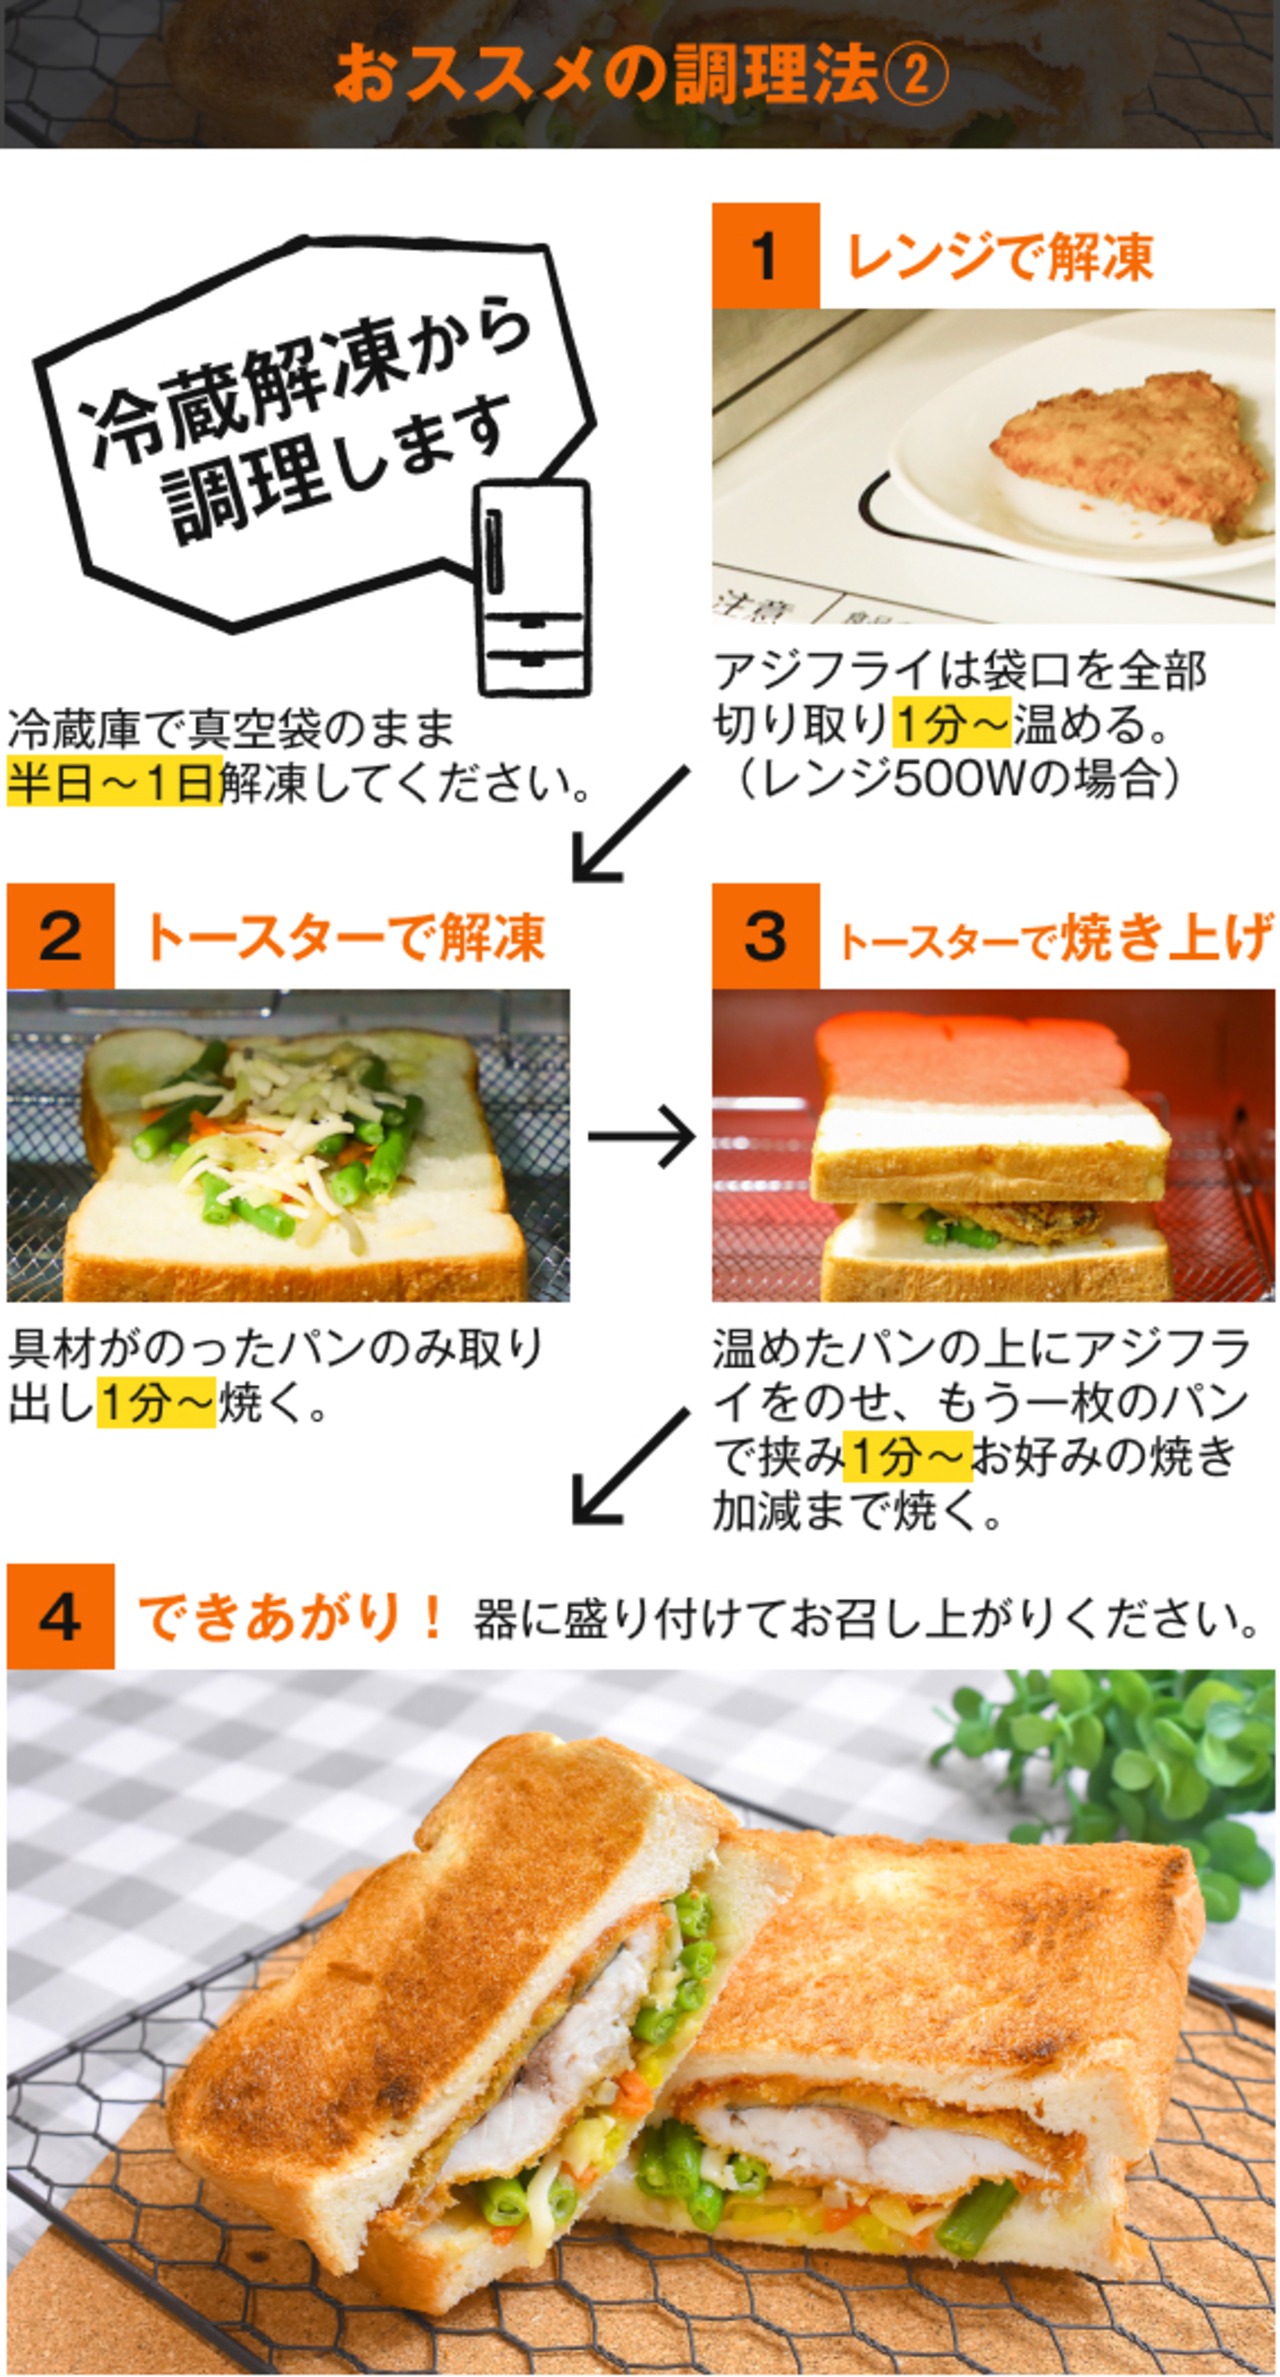 【冷凍食品】松浦アジフライサンド しゃっきり野菜